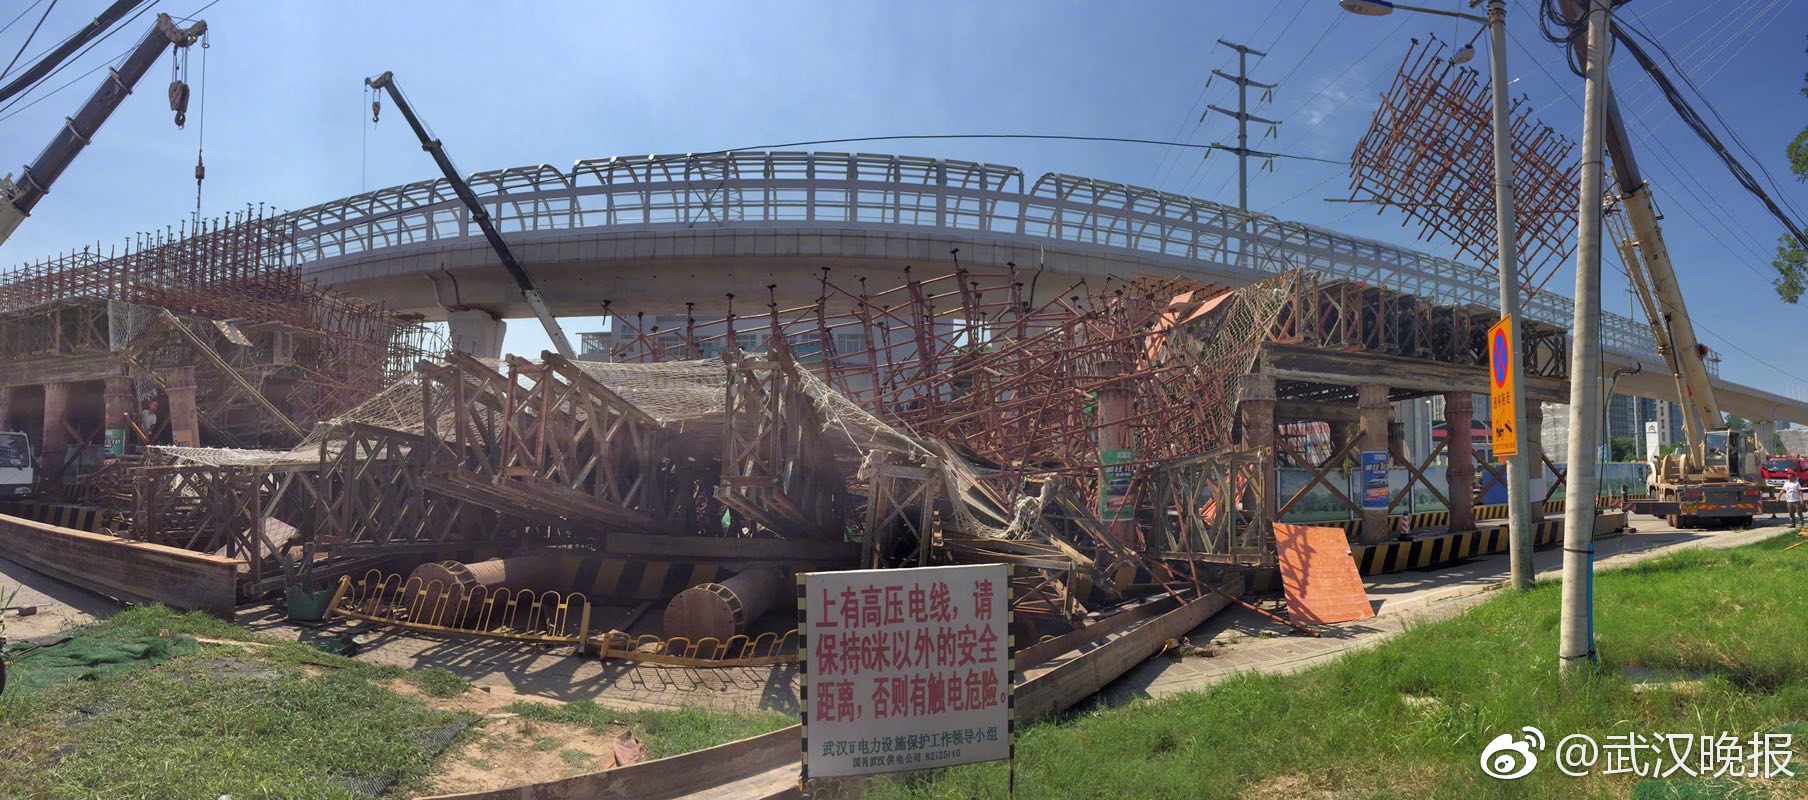 武汉一高架桥脚手架发生坍塌 面包车被压伤者送医